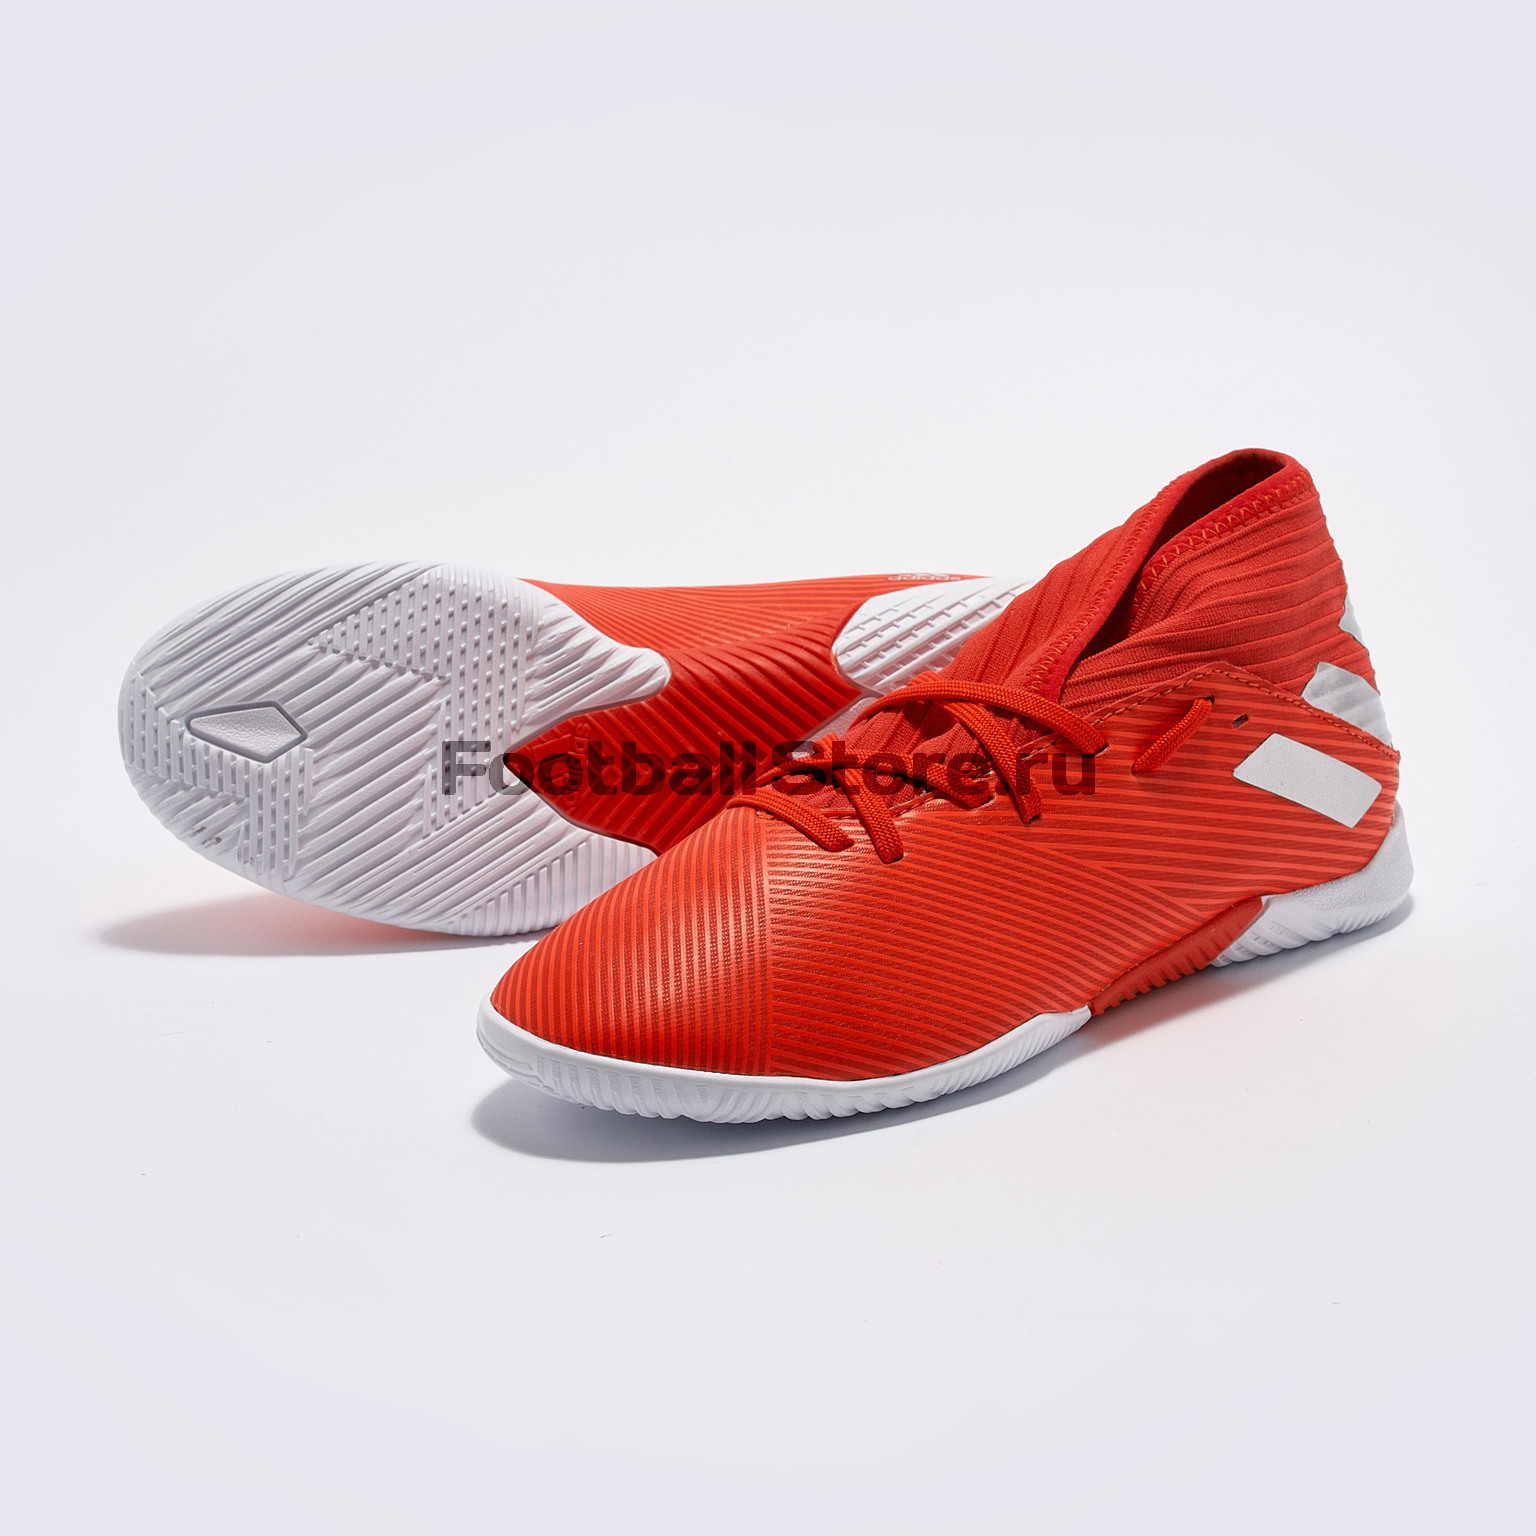 Футзалки детские Adidas Nemeziz 19.3 IN F99945 